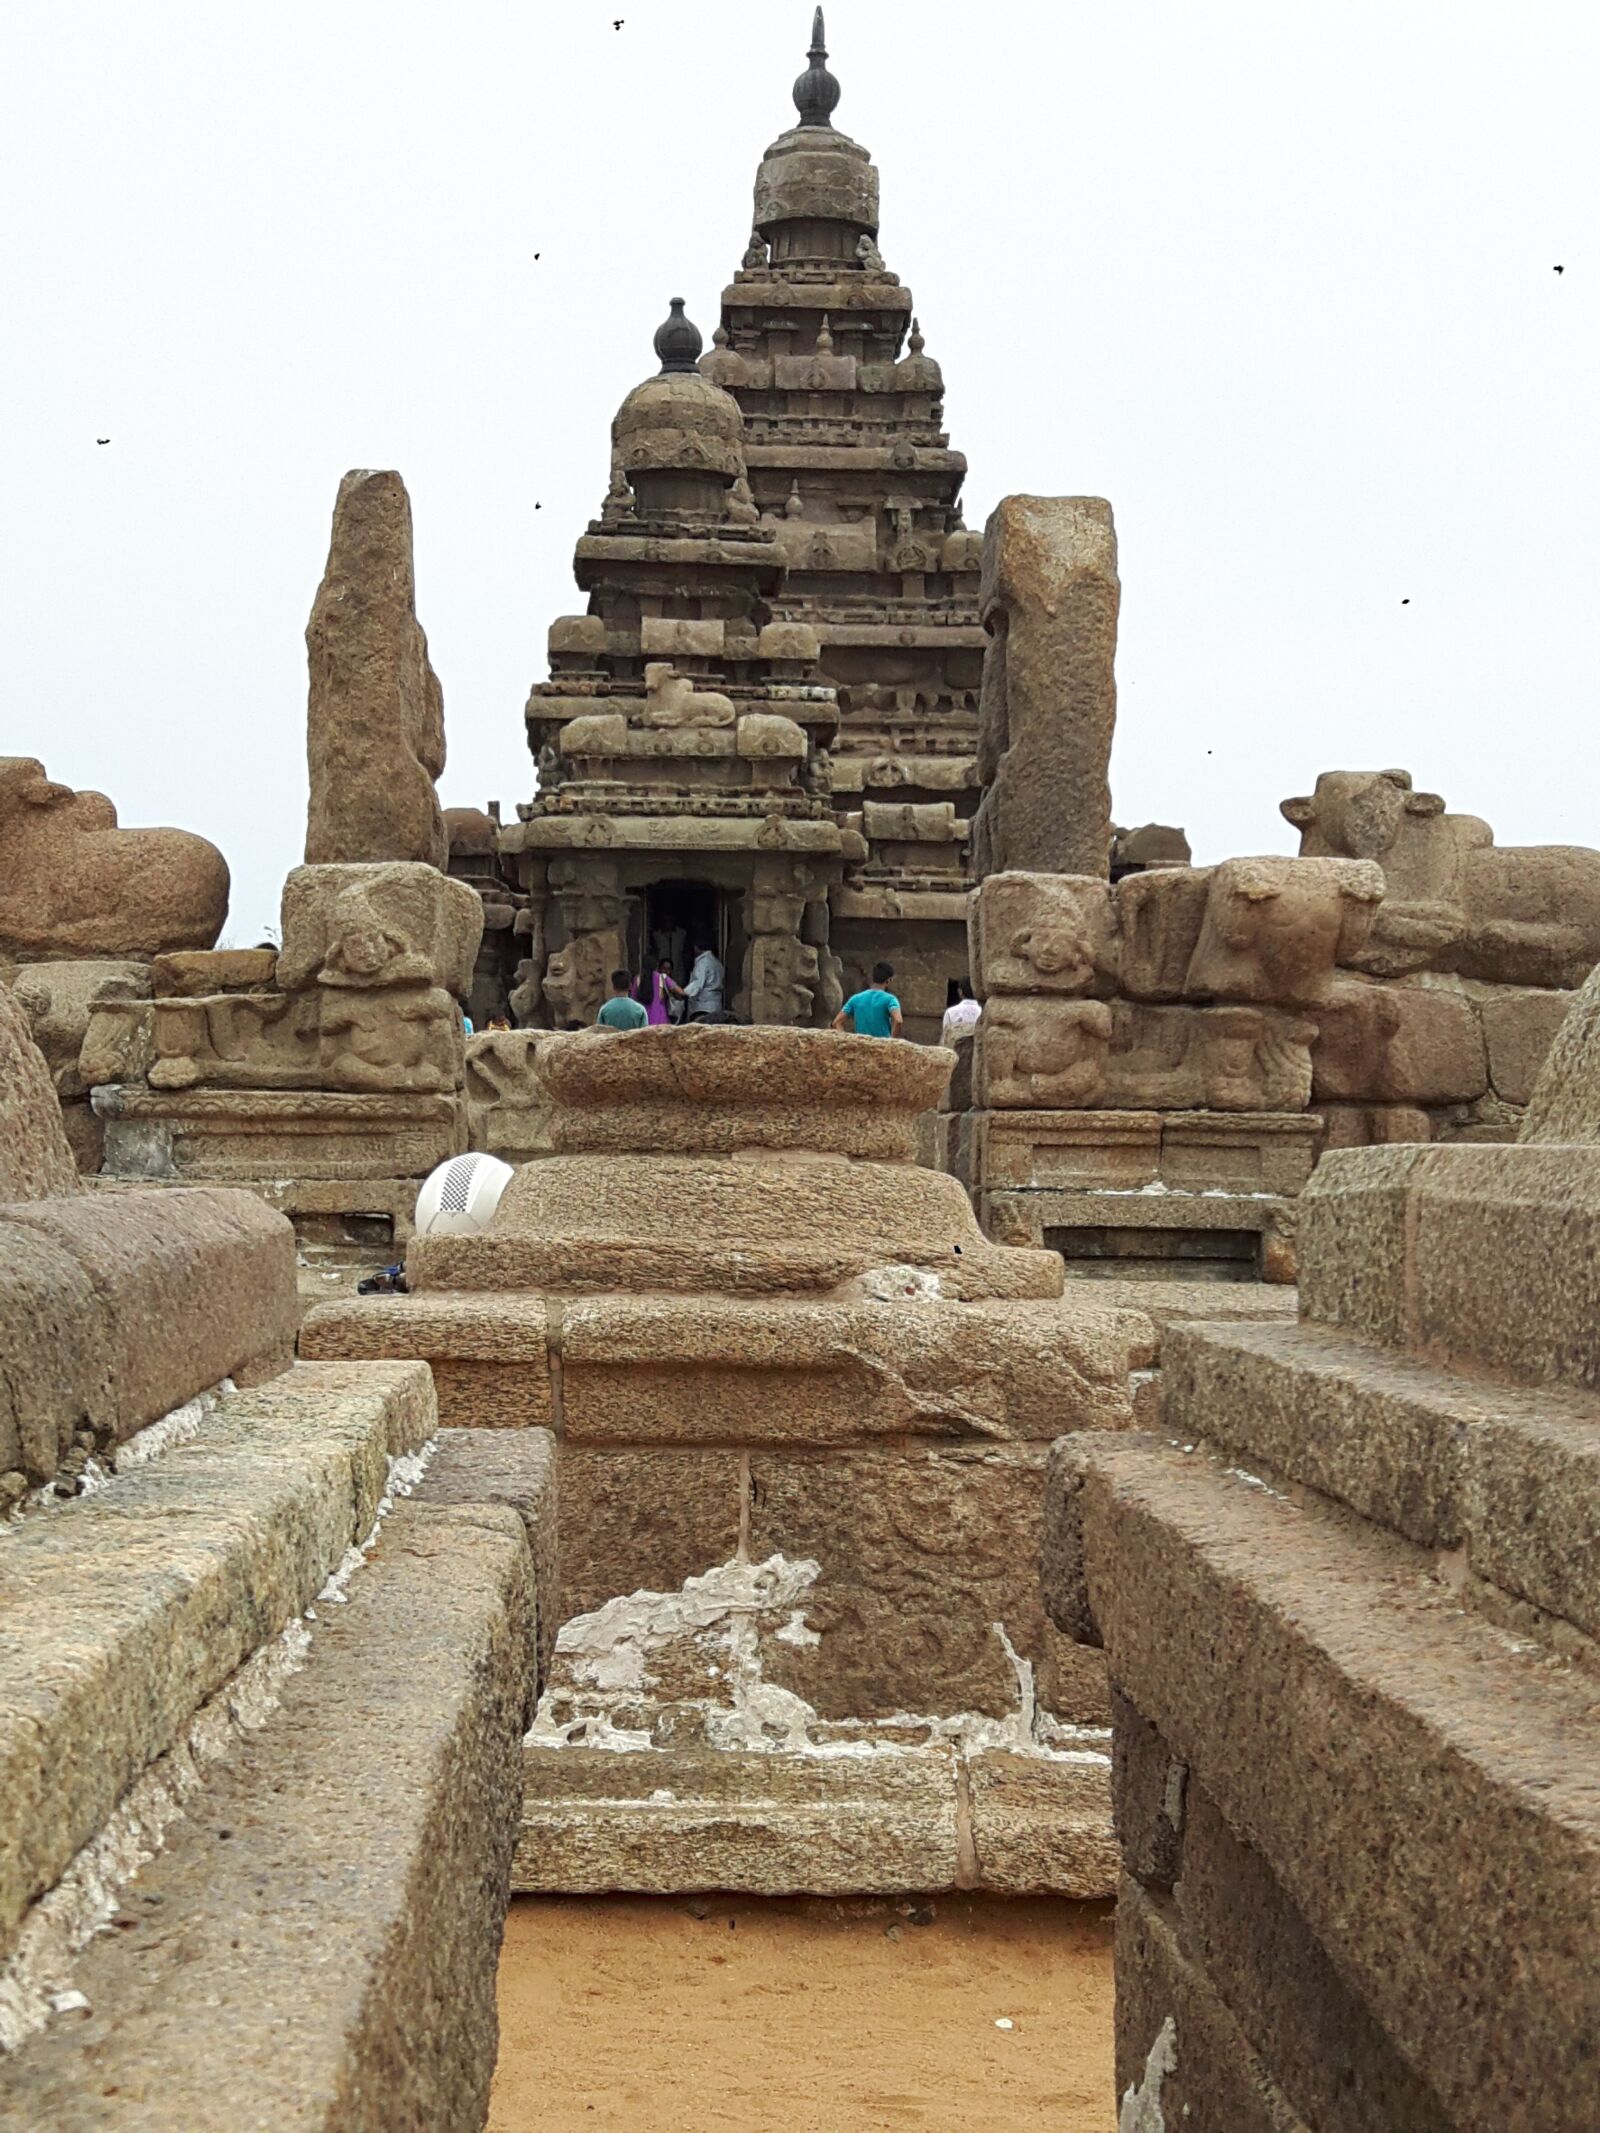 Samsung Galaxy A8 sample photo. Mahabalipuram, ancient, historic photography